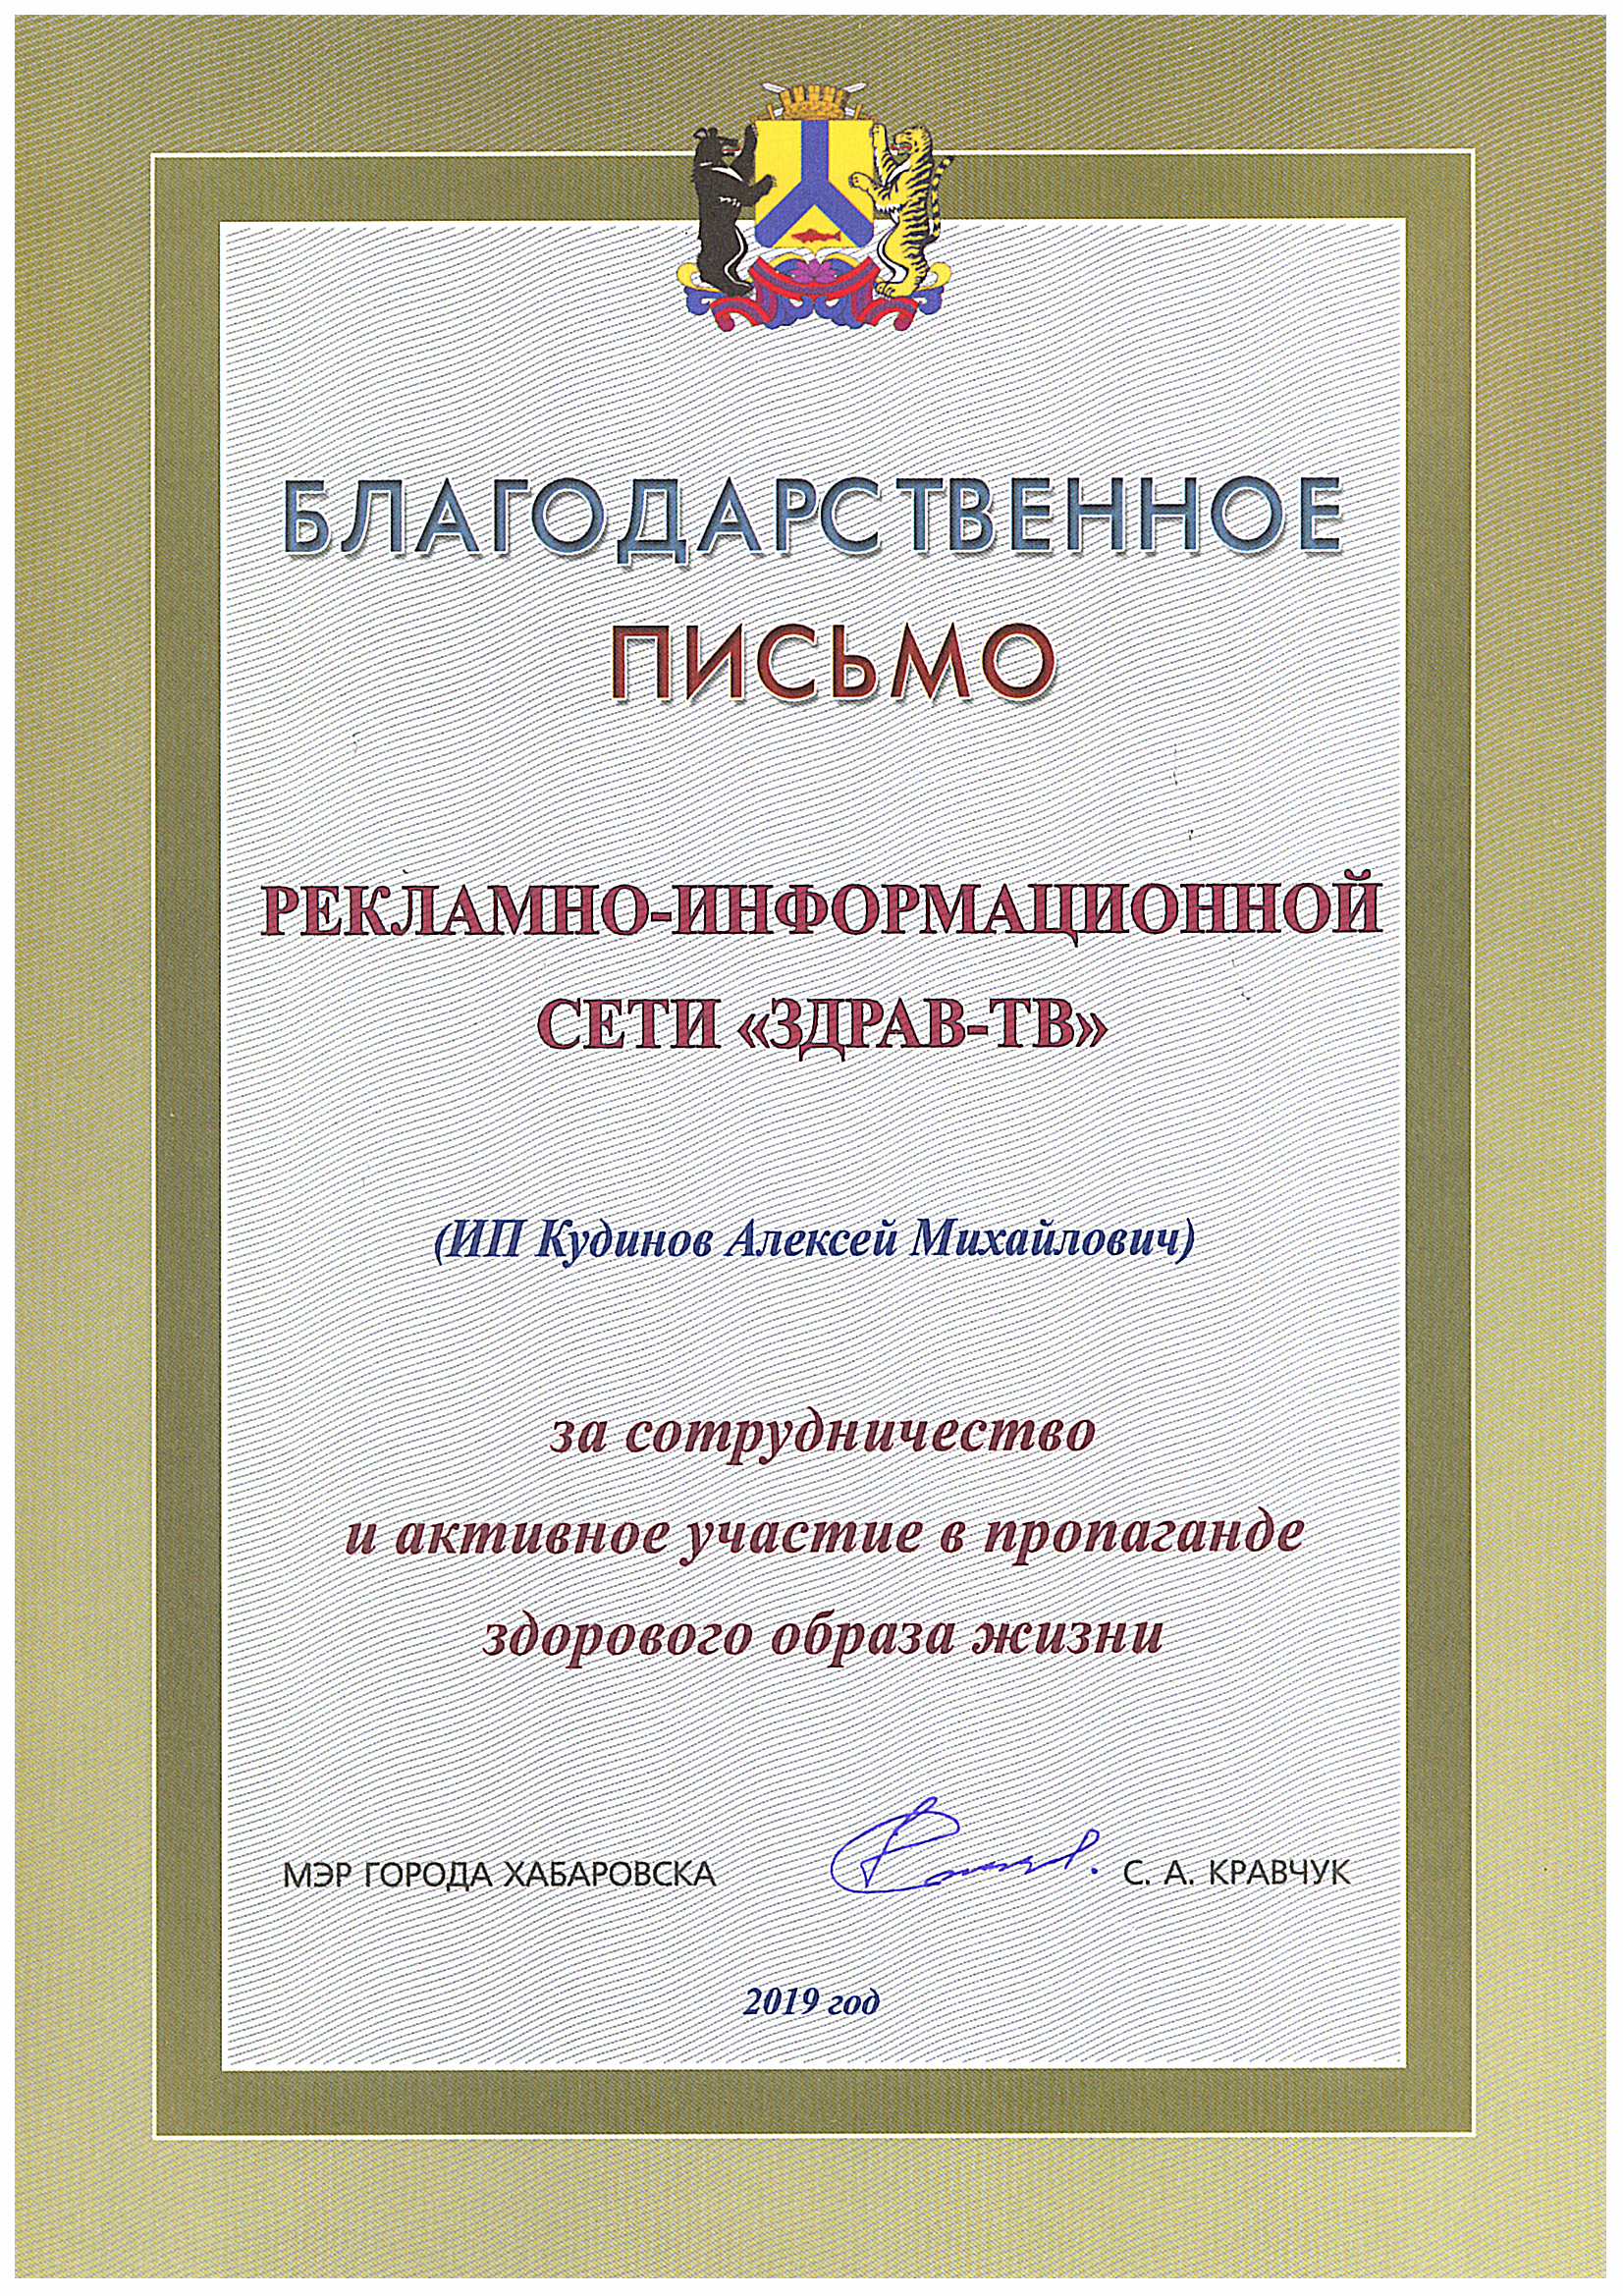 Благодарственное письмо от мэра города Хабаровск